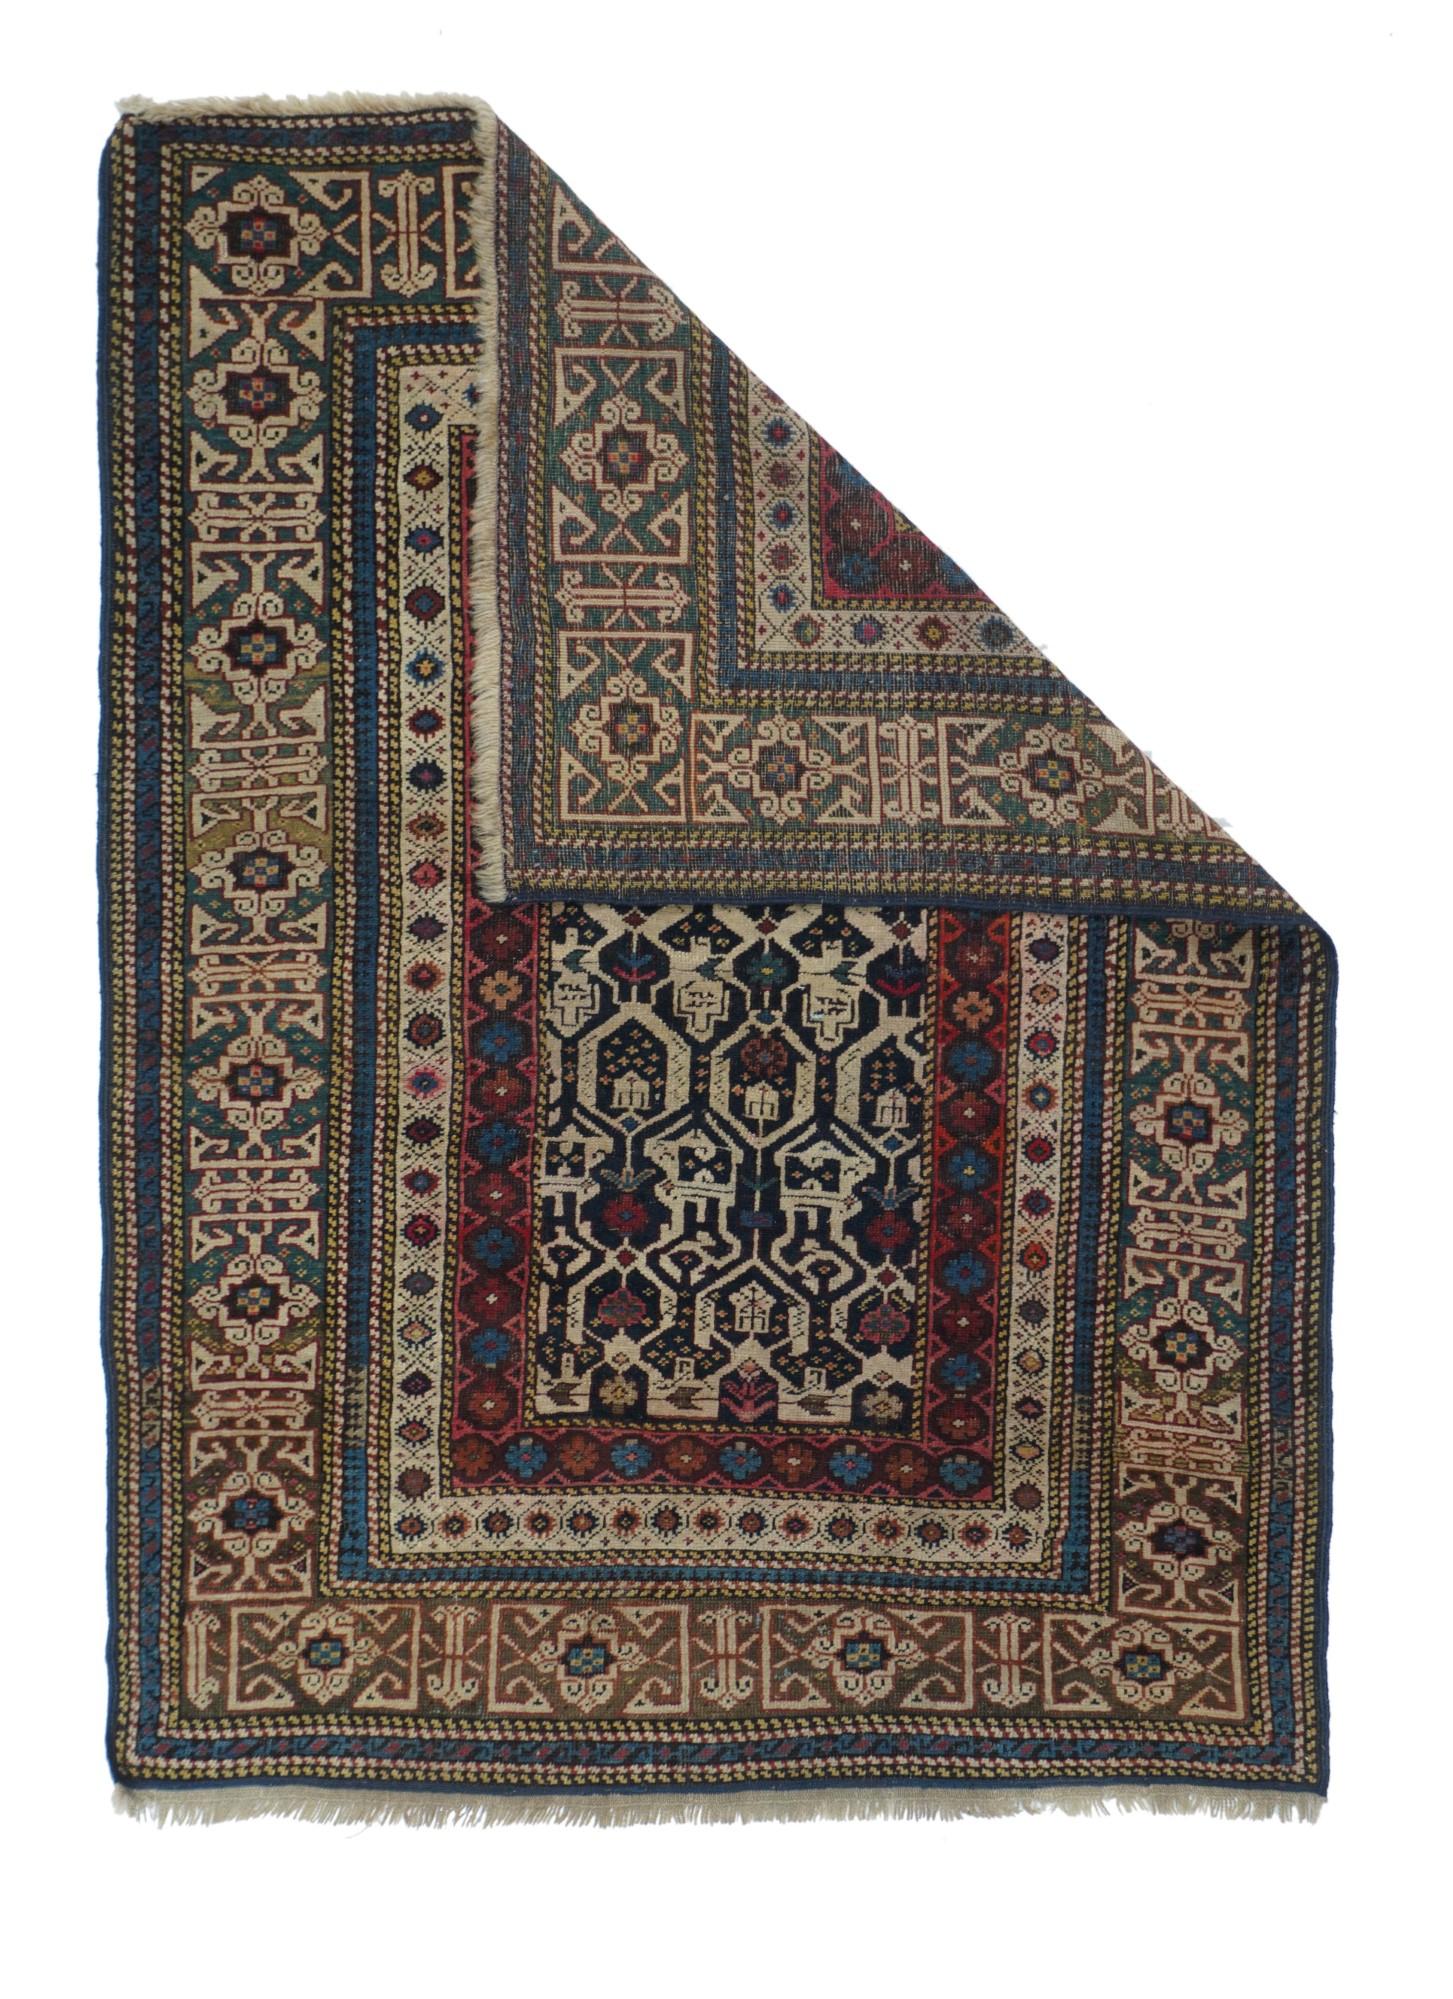 Antique Caucasian Shirvan Rug 3' x 4'5''.